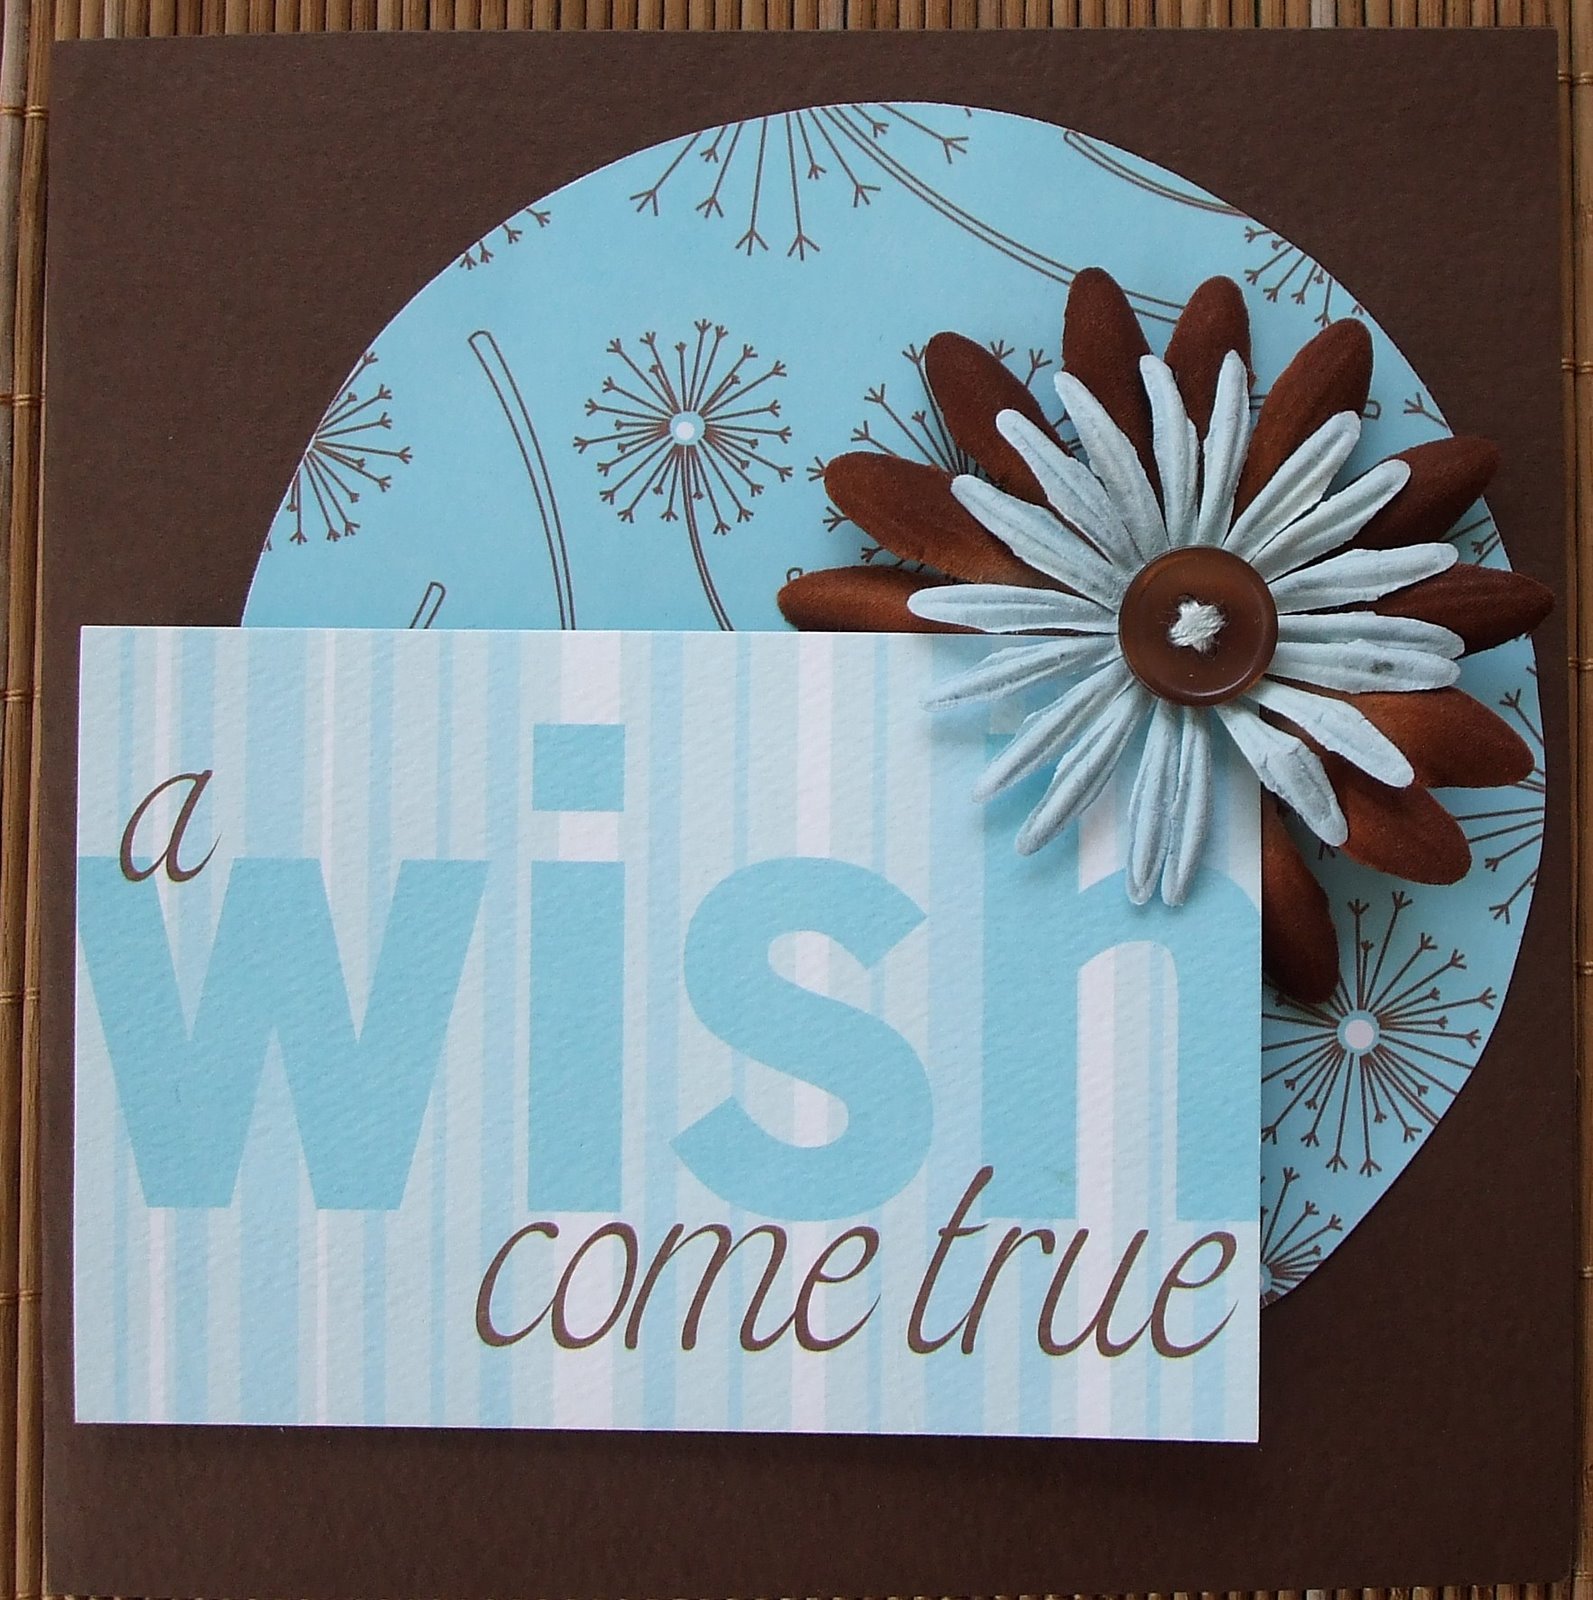 [a+wish+come+true.jpg]